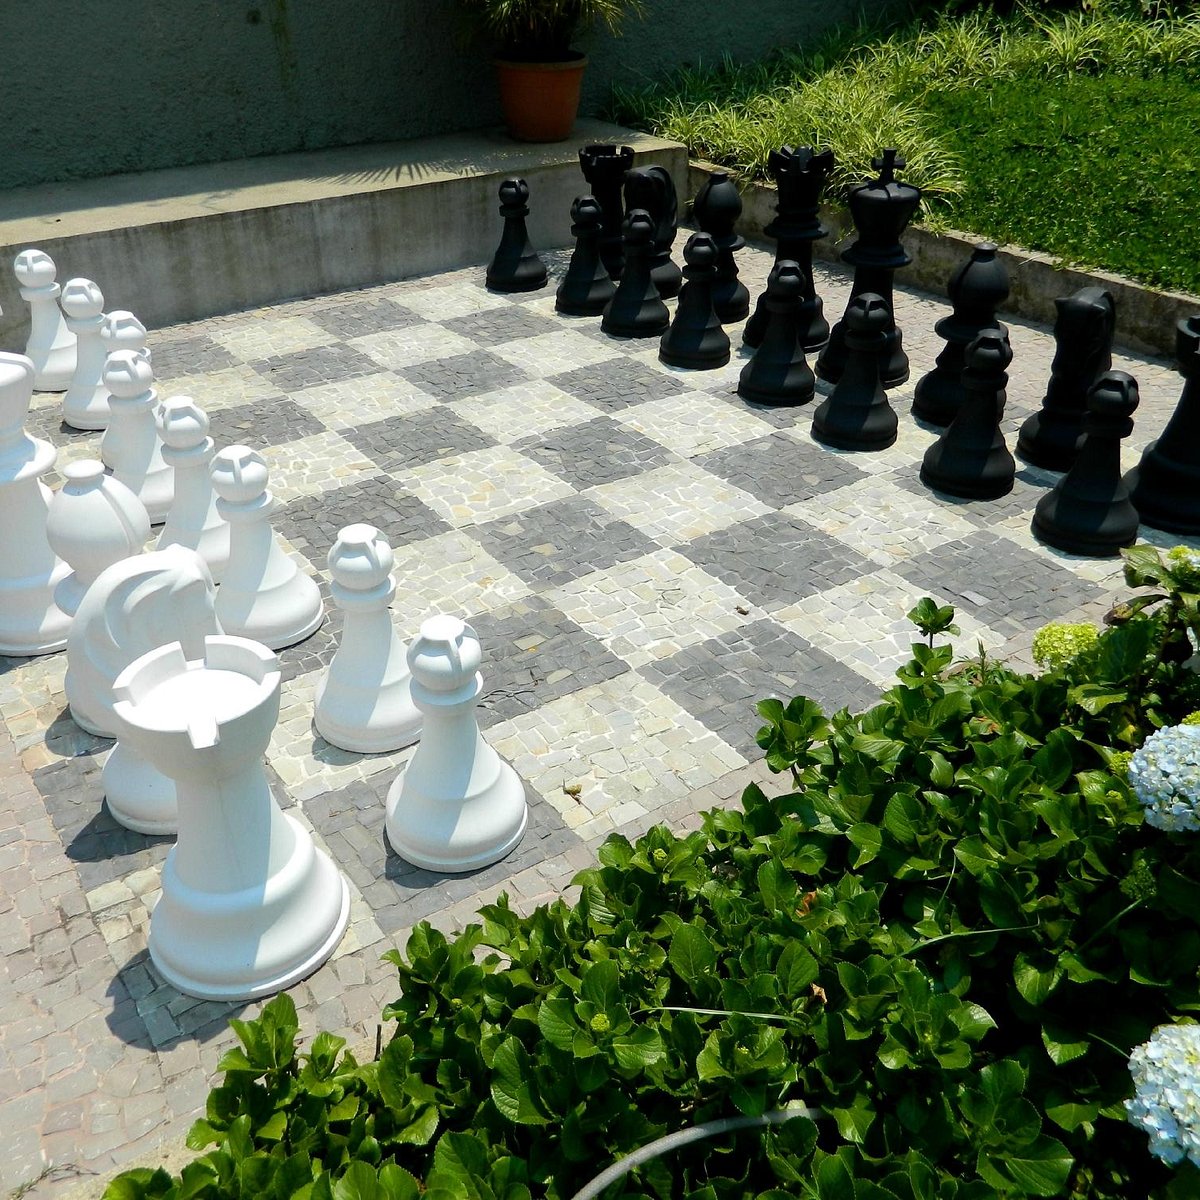 5 santos que adoravam o jogo de xadrez